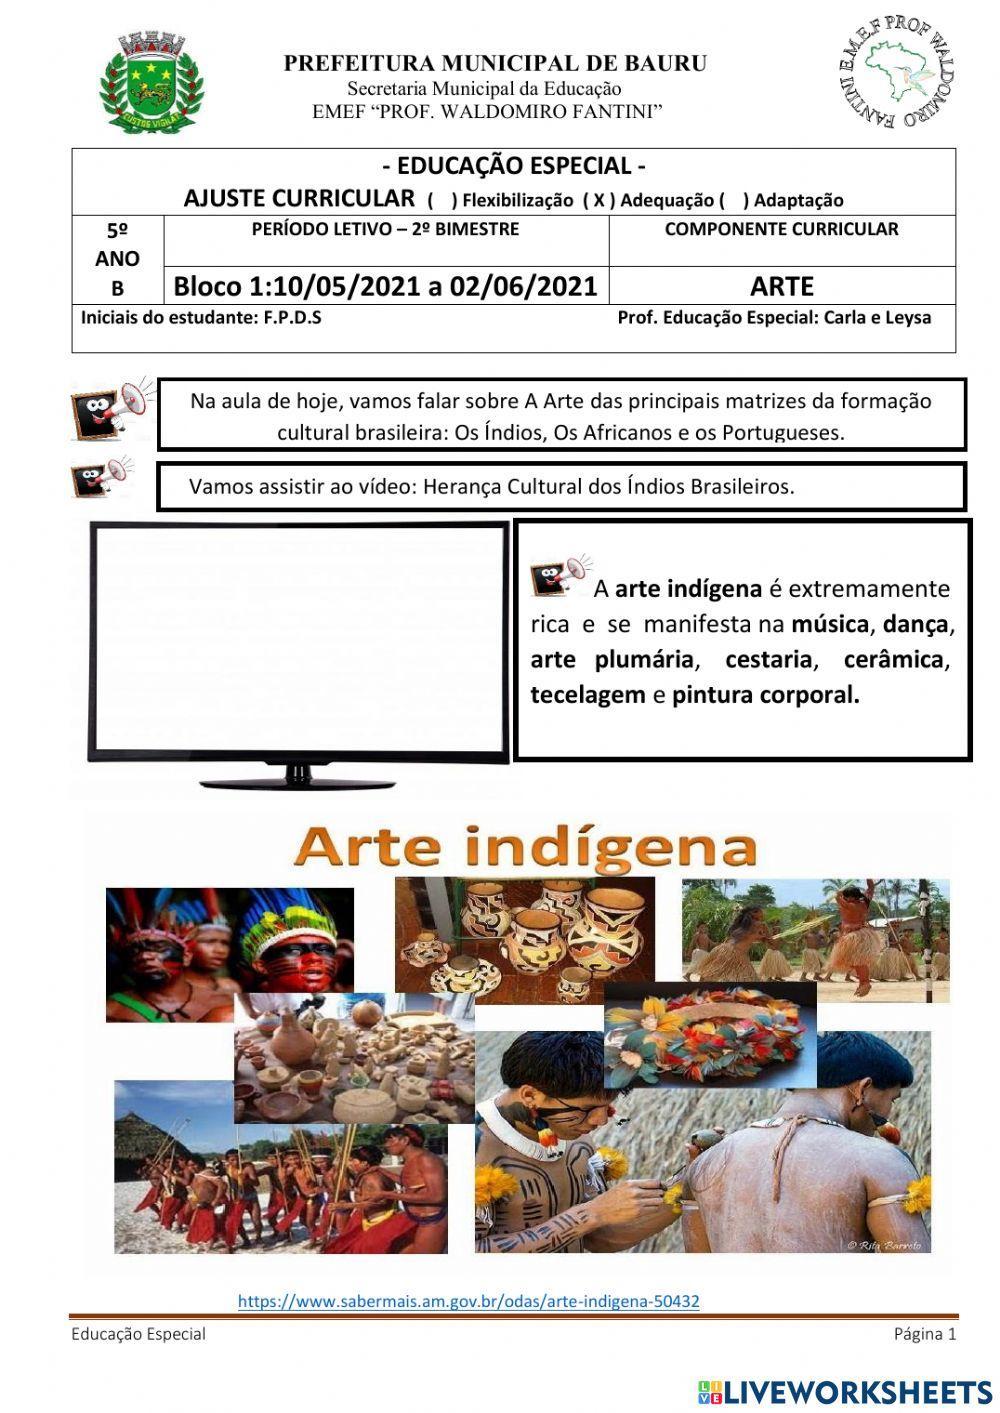 Arte: Influências: indígena, africana e portuguesa na cultura brasileira